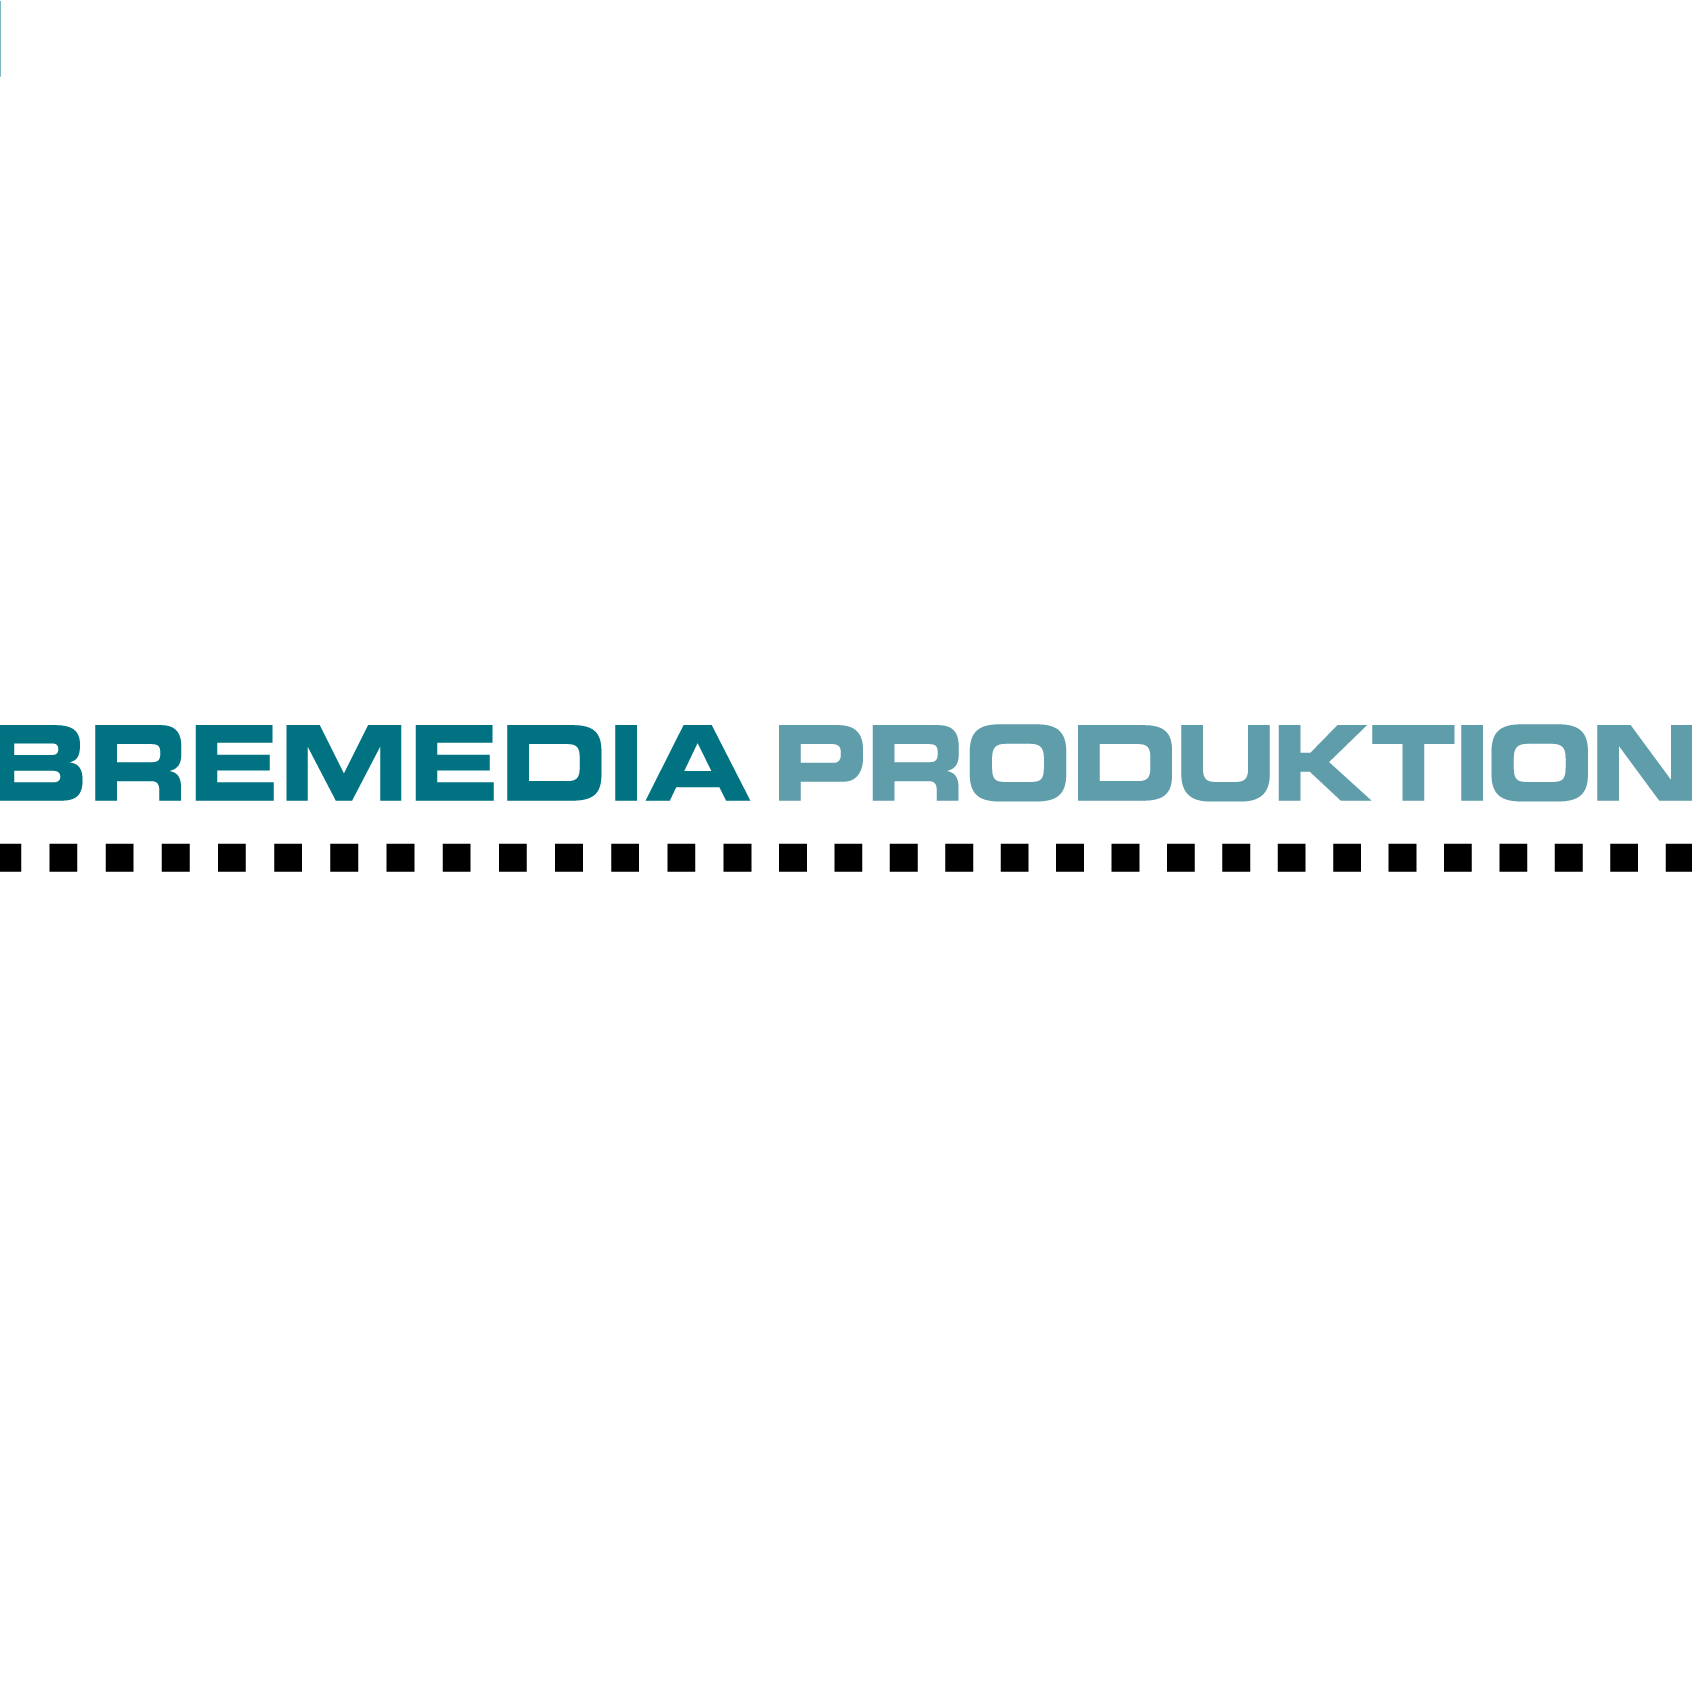 www.bremedia-produktion.de